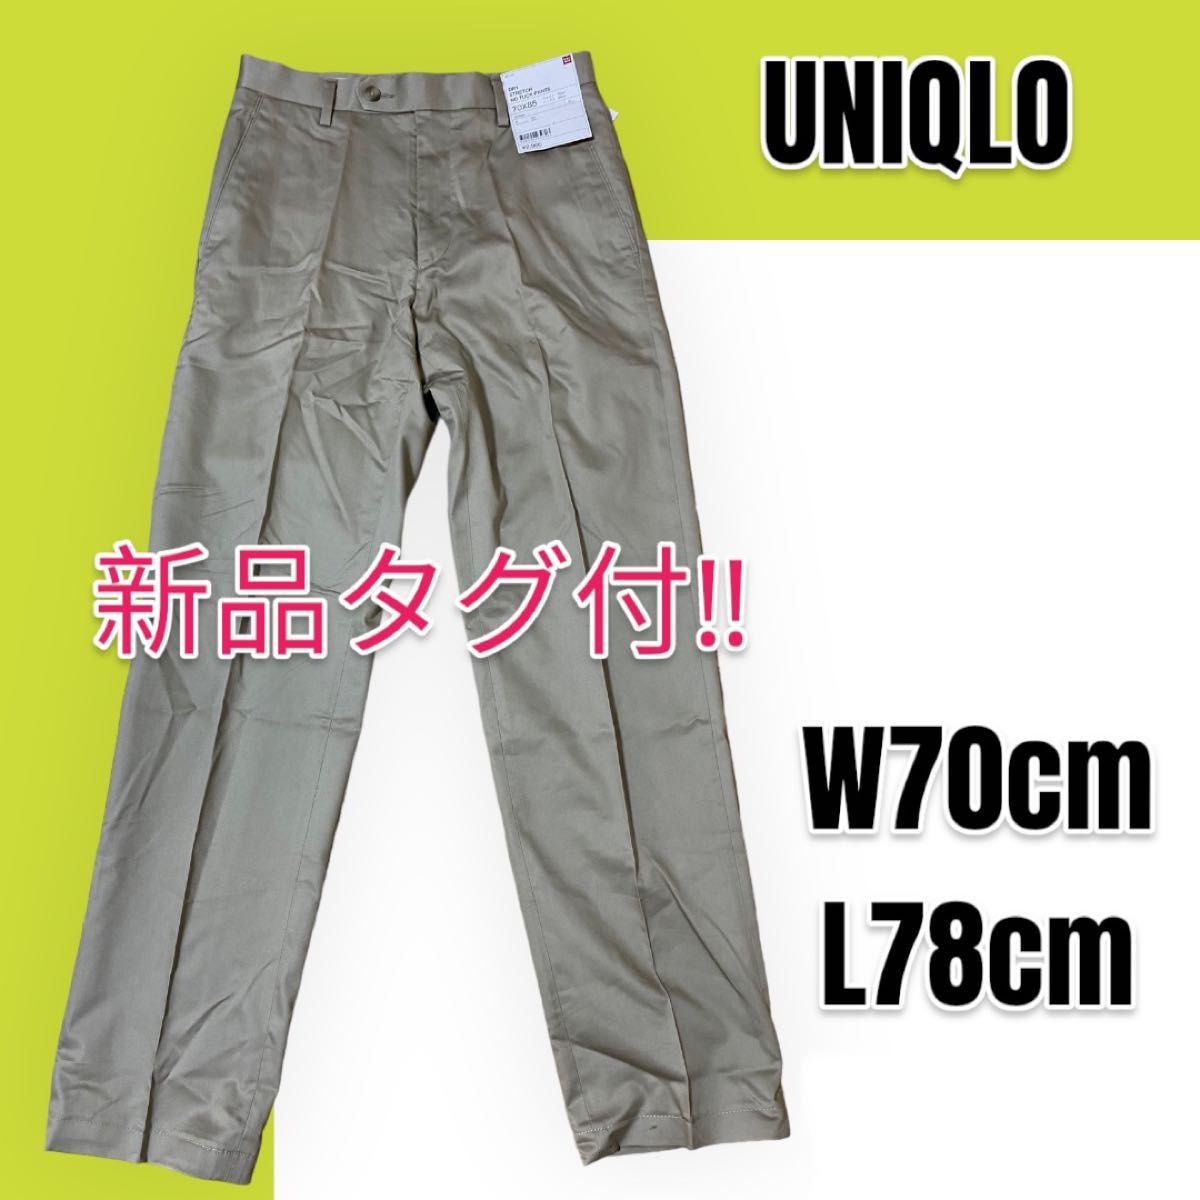 【新品未使用】UNIQLO ユニクロ ドライストレッチノータックパンツ